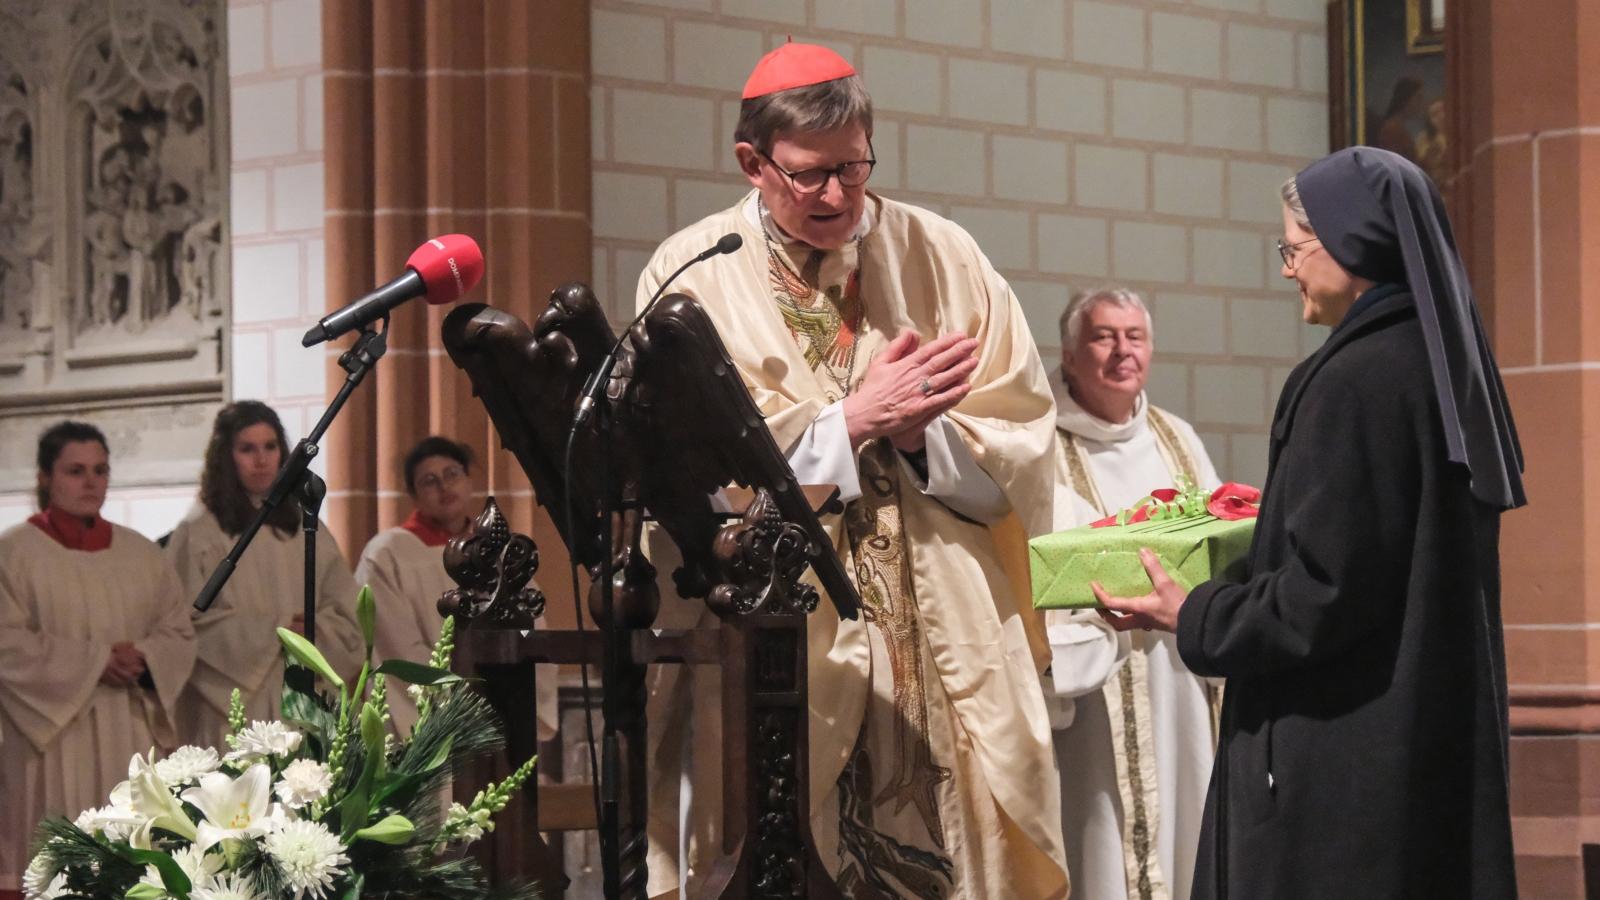 Zum Abschied der Paulus-Schwestern aus Düssseldorf feierte Kardinal Woelki gemeinsam mit den Schwestern einen Dankgottesdienst in der Kirche St. Peter, Düsseldorf.